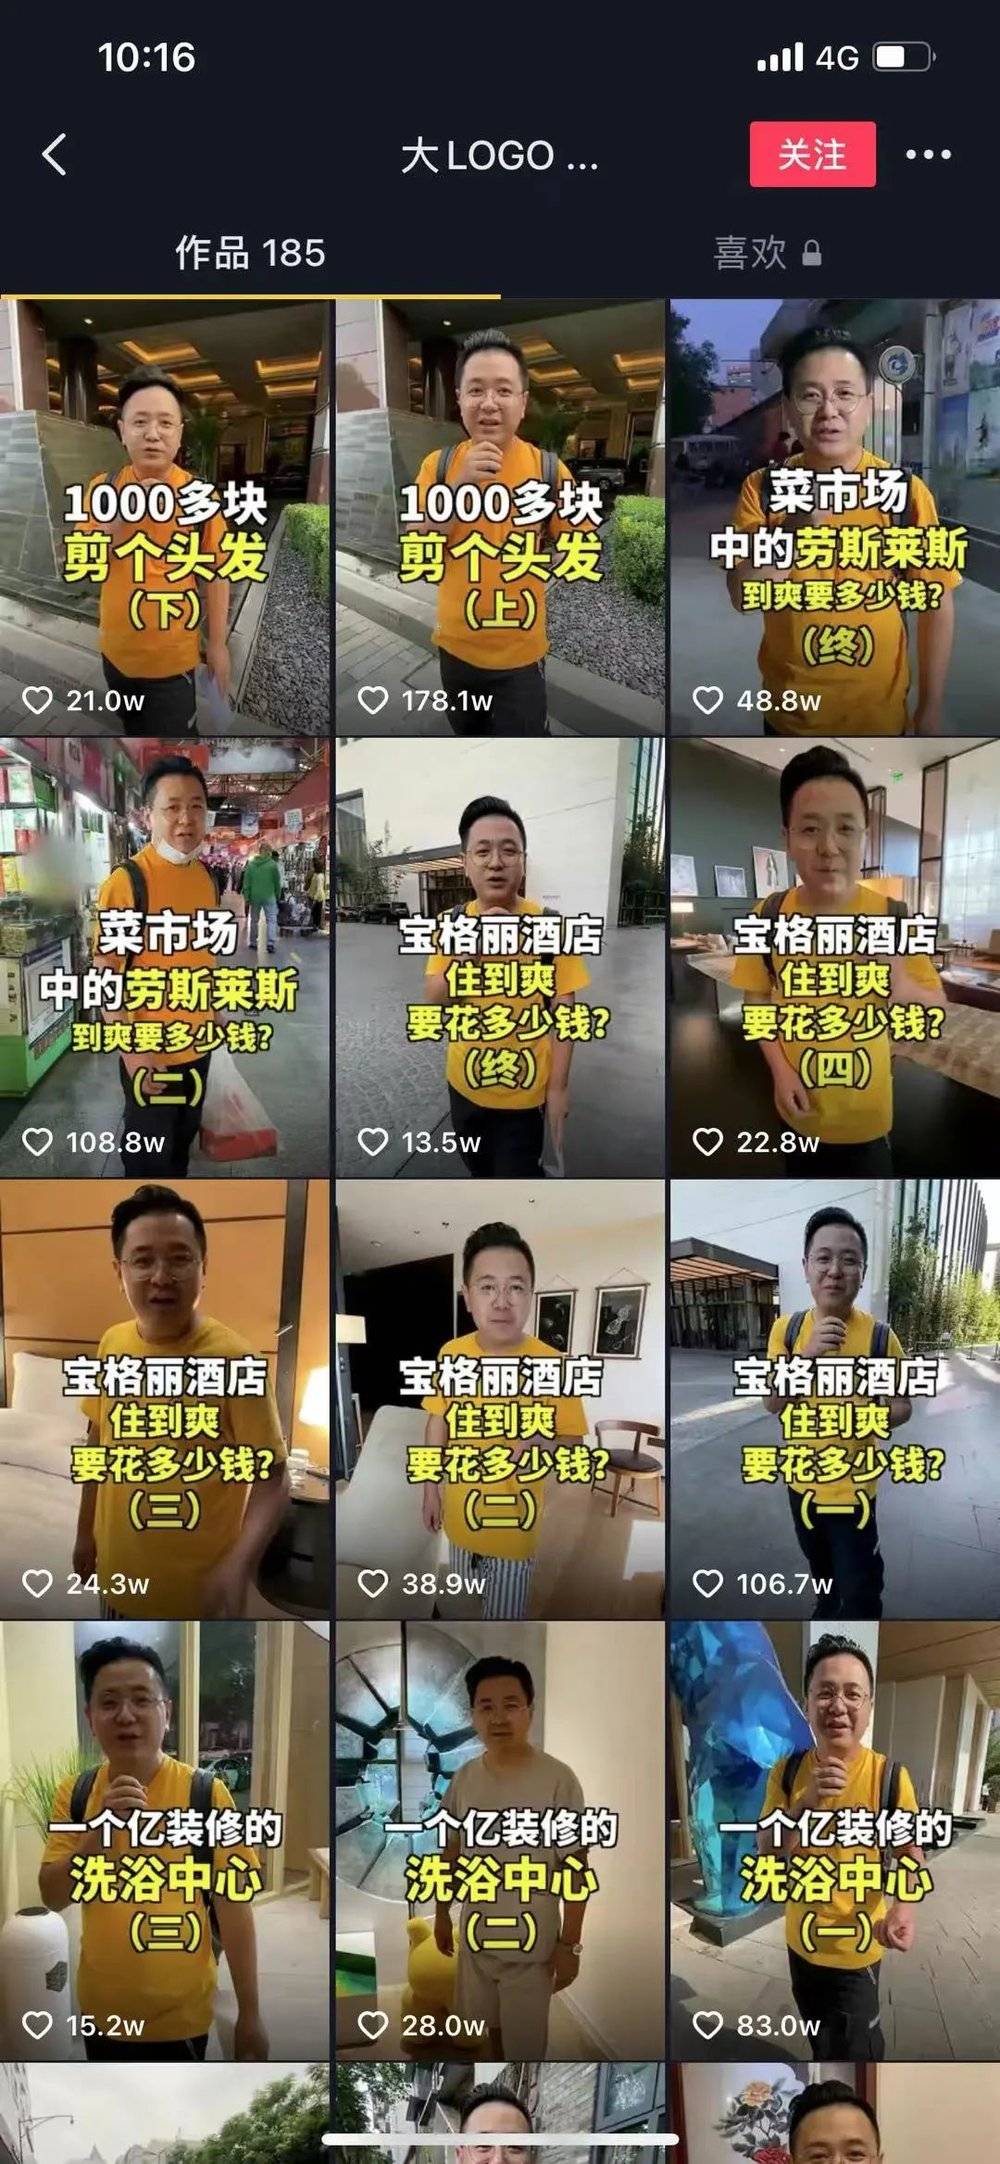 “大LOGO吃垮北京”目前的首页展示视频